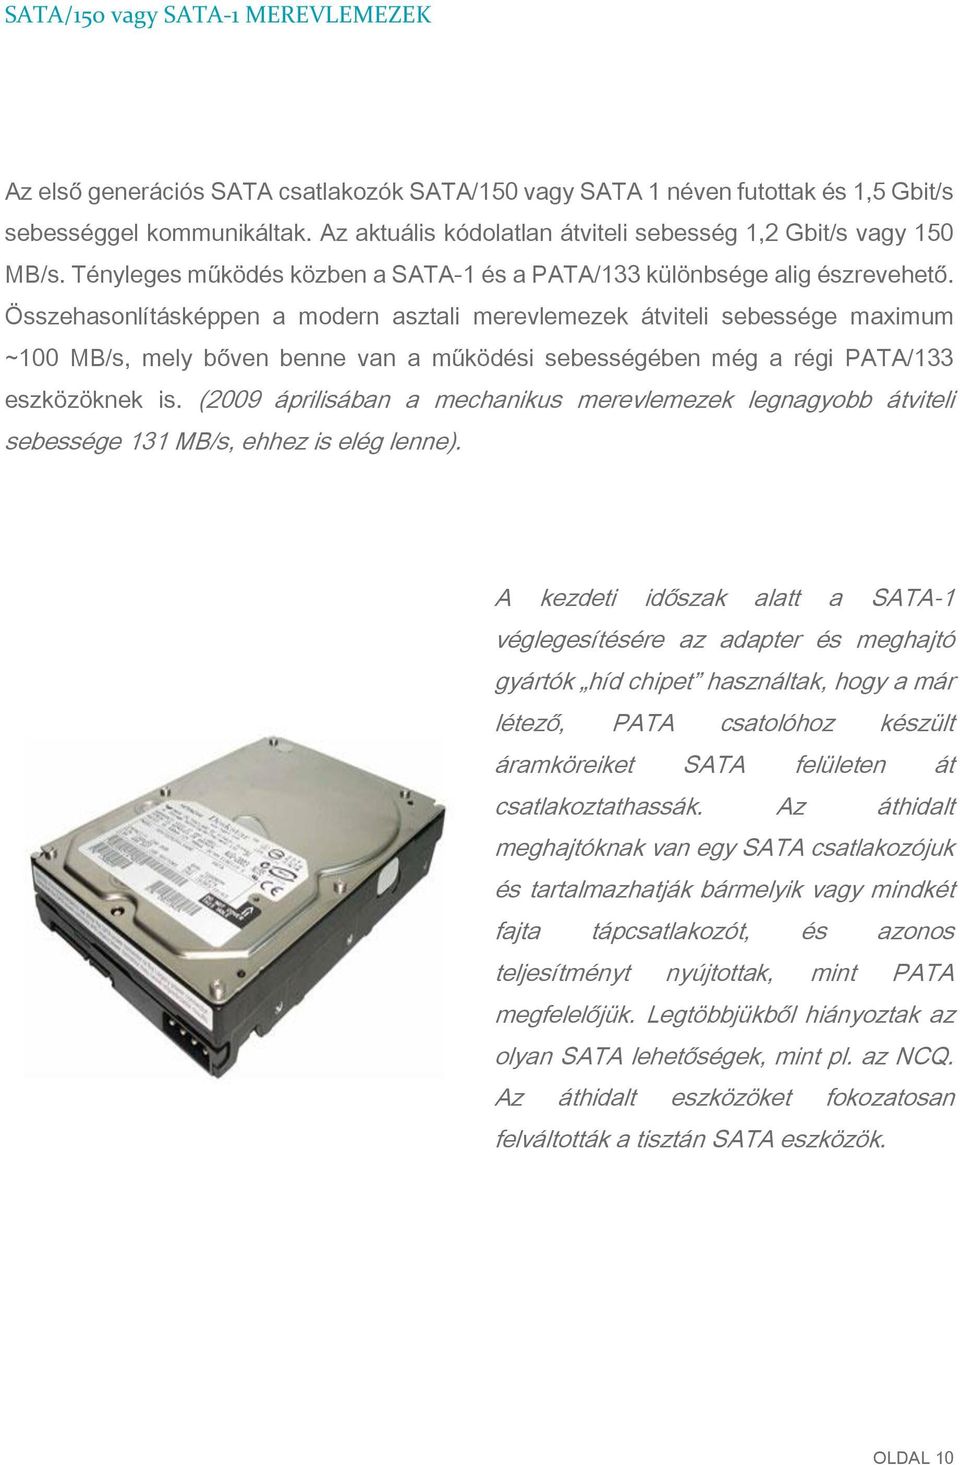 Összehasonlításképpen a modern asztali merevlemezek átviteli sebessége maximum ~100 MB/s, mely bőven benne van a működési sebességében még a régi PATA/133 eszközöknek is.